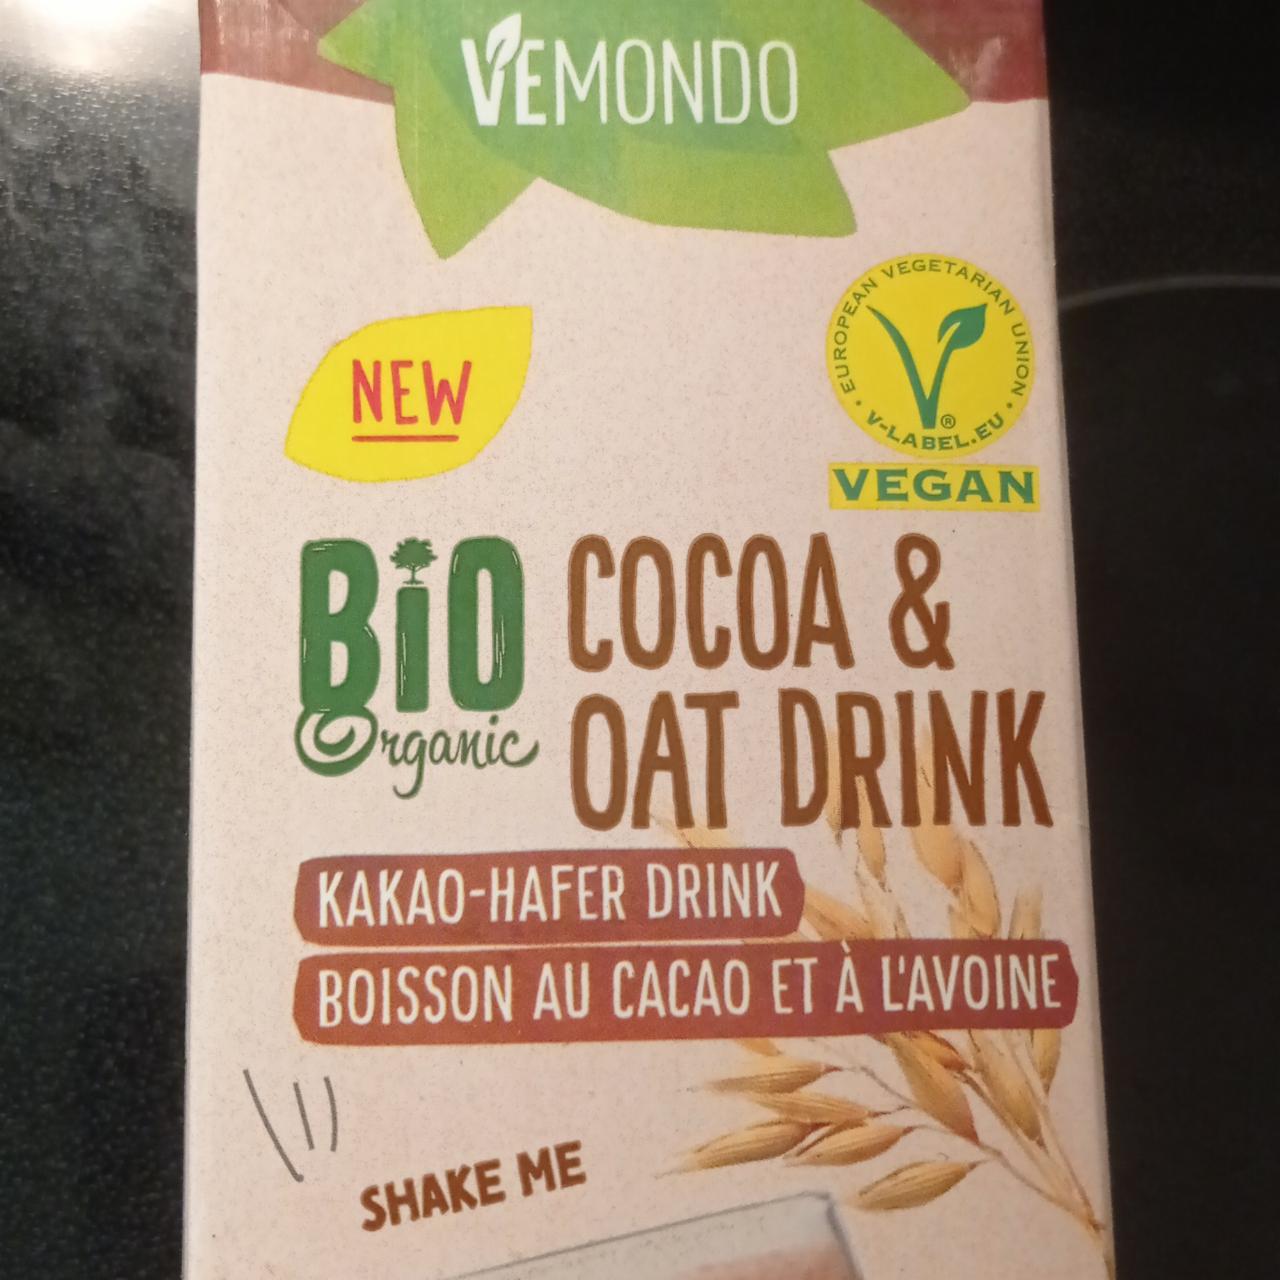 hodnoty - Hafer nutriční Vemondo Kakao kalorie, a Bio kJ